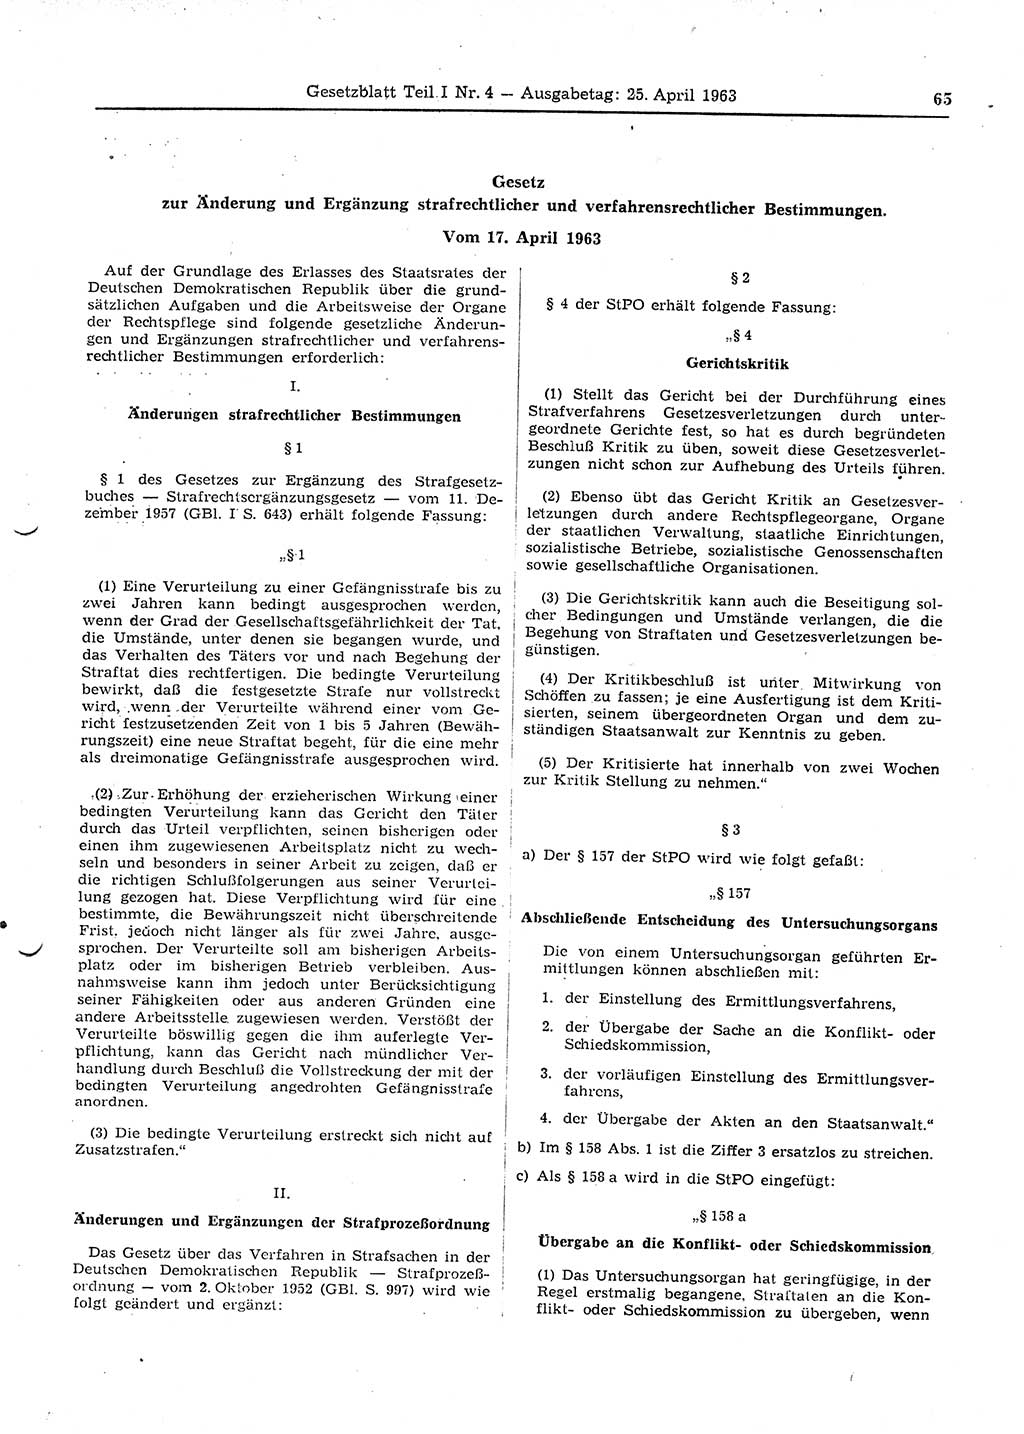 Gesetzblatt (GBl.) der Deutschen Demokratischen Republik (DDR) Teil Ⅰ 1963, Seite 65 (GBl. DDR Ⅰ 1963, S. 65)